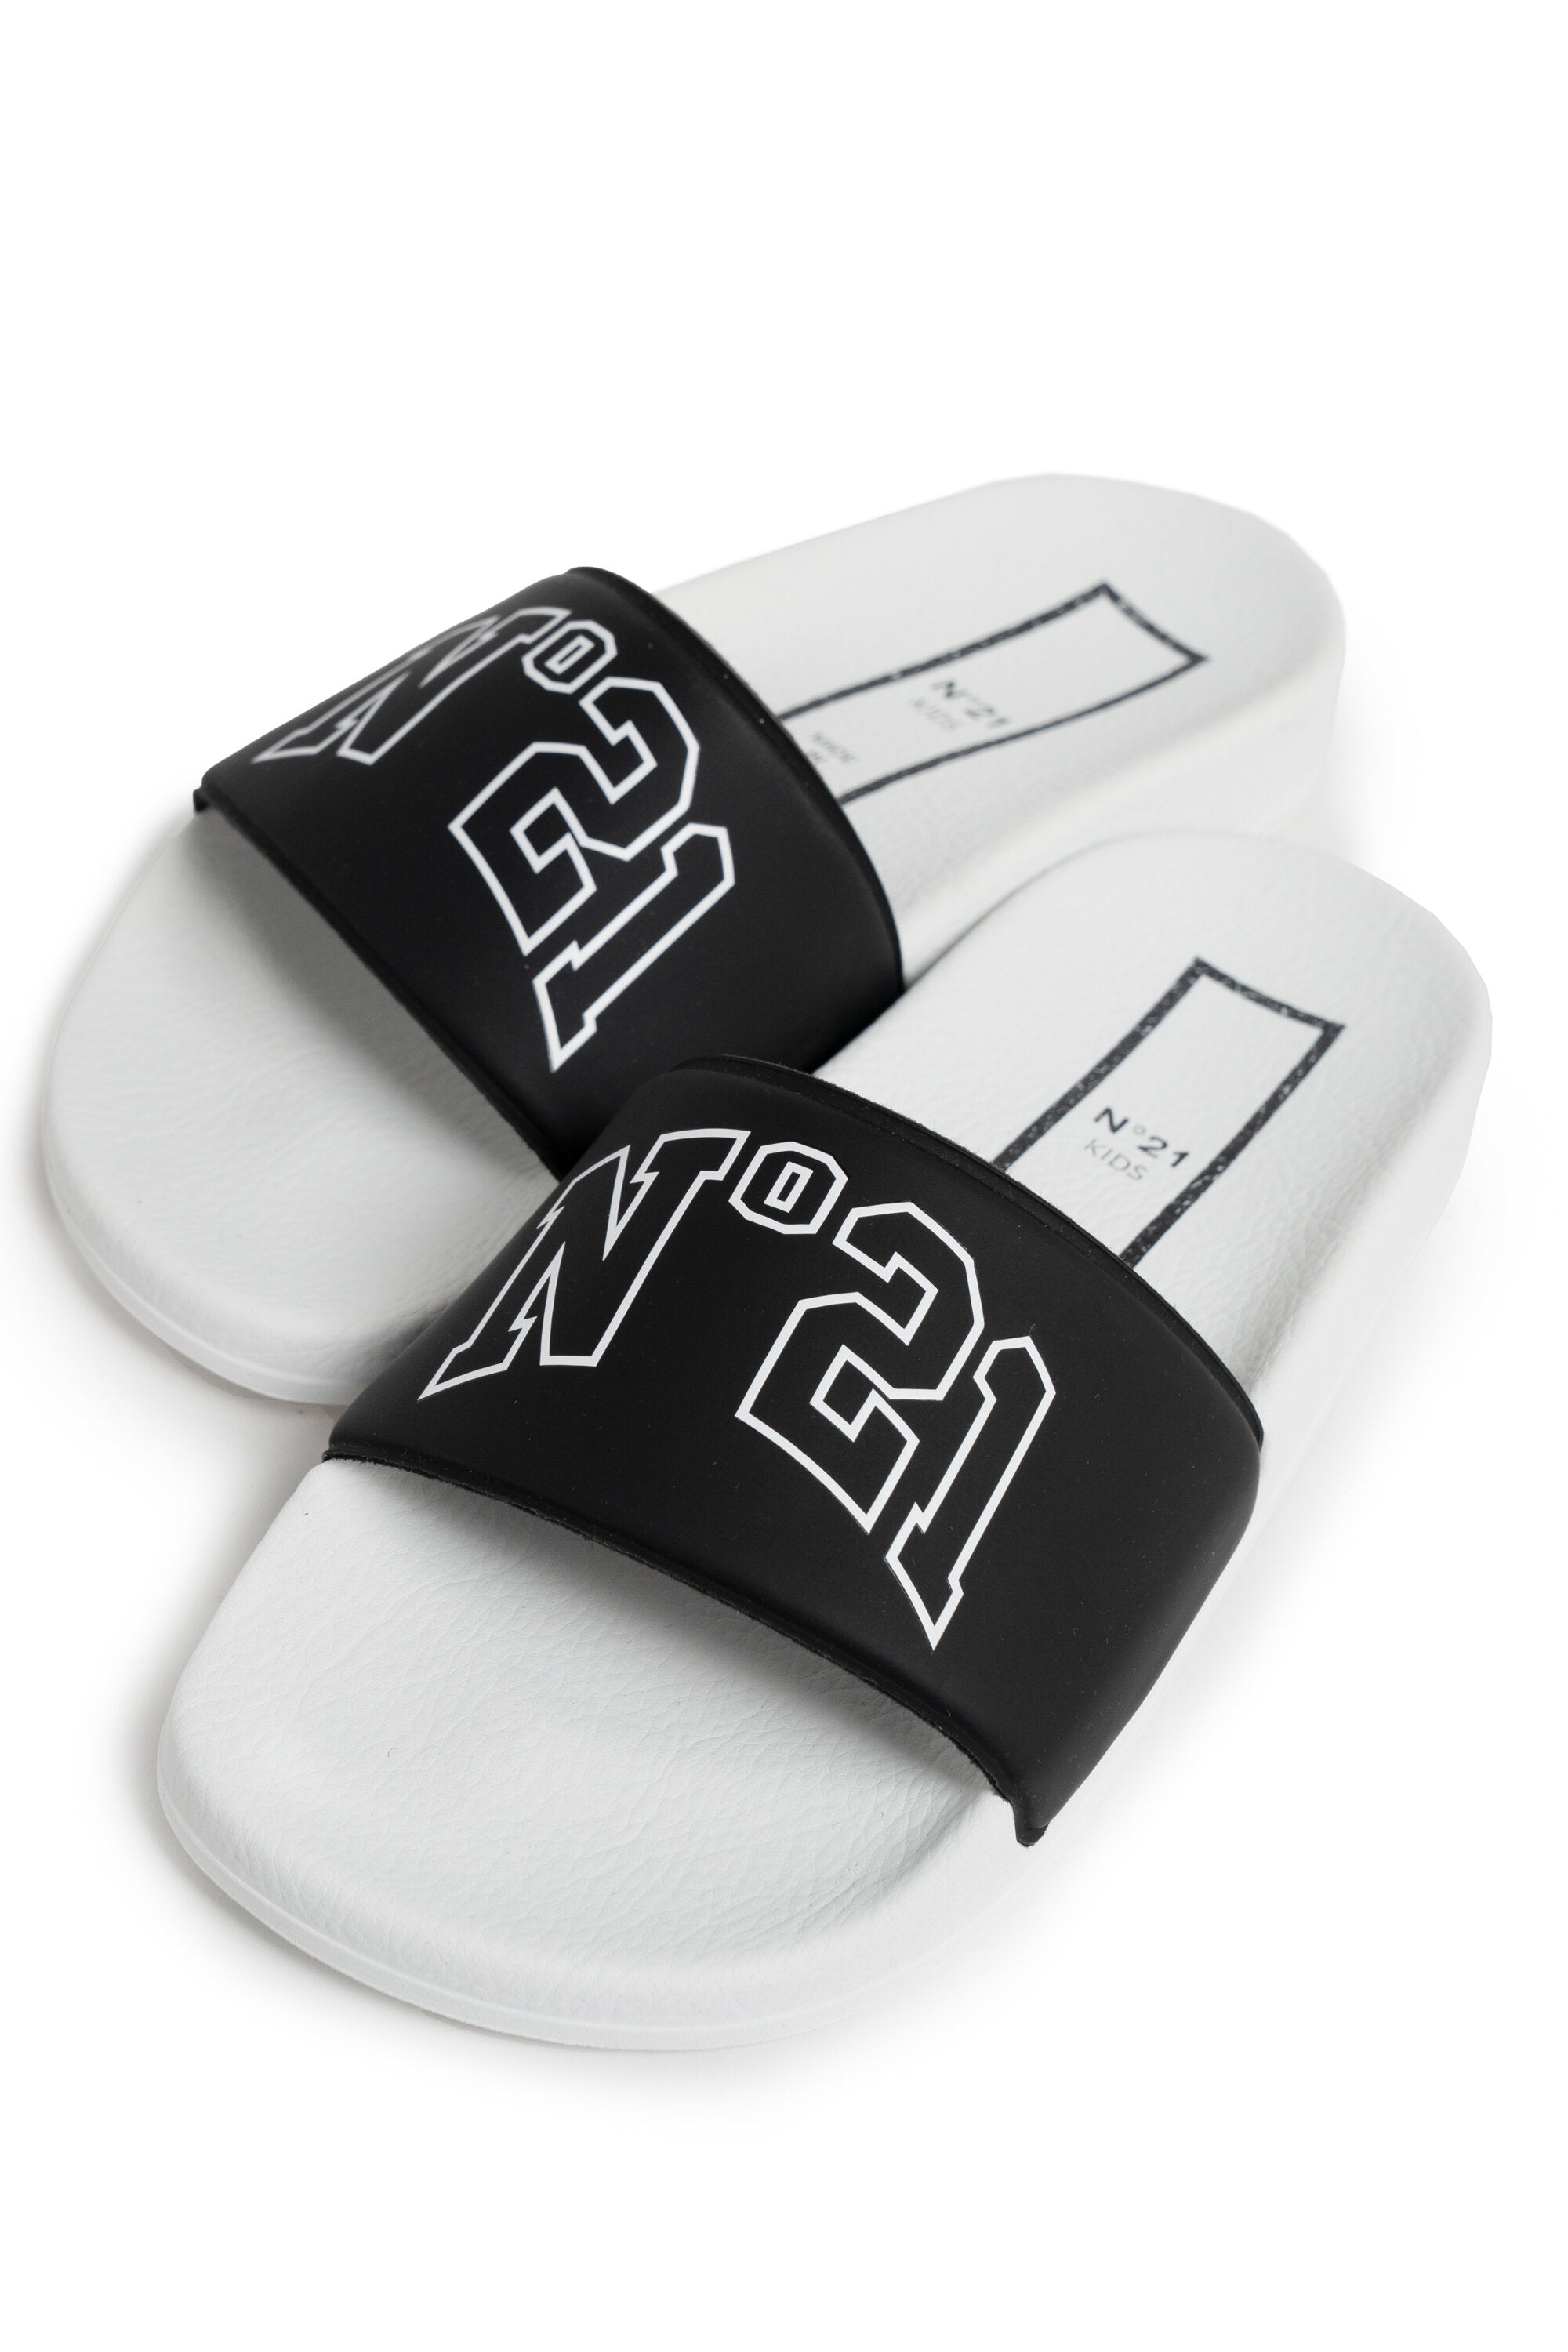 Black slide slippers with logo